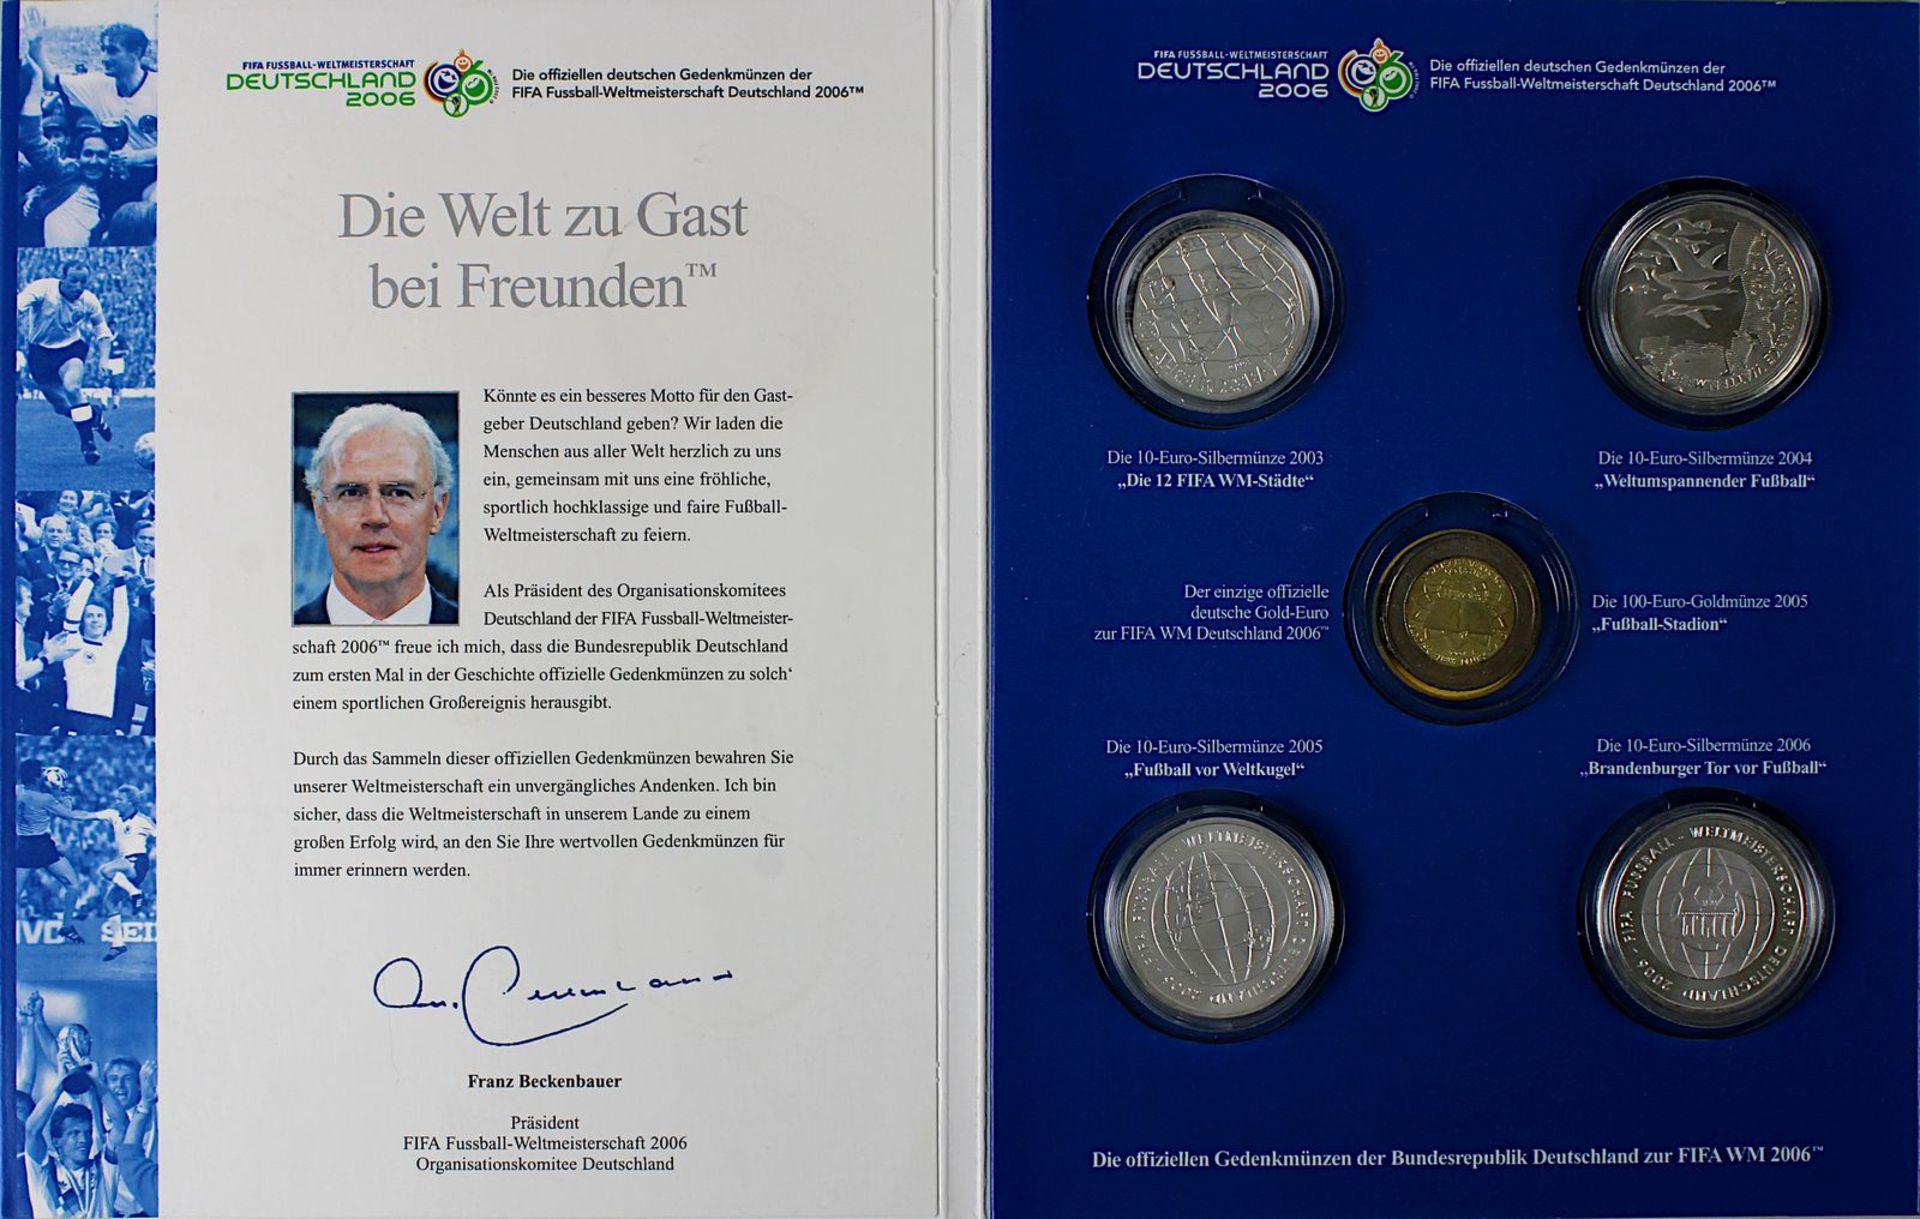 Vier Silbermünzen, zur Fußballweltmeisterschaft Deutschland 2006: "Die Fifa WM-Städte 2003", "